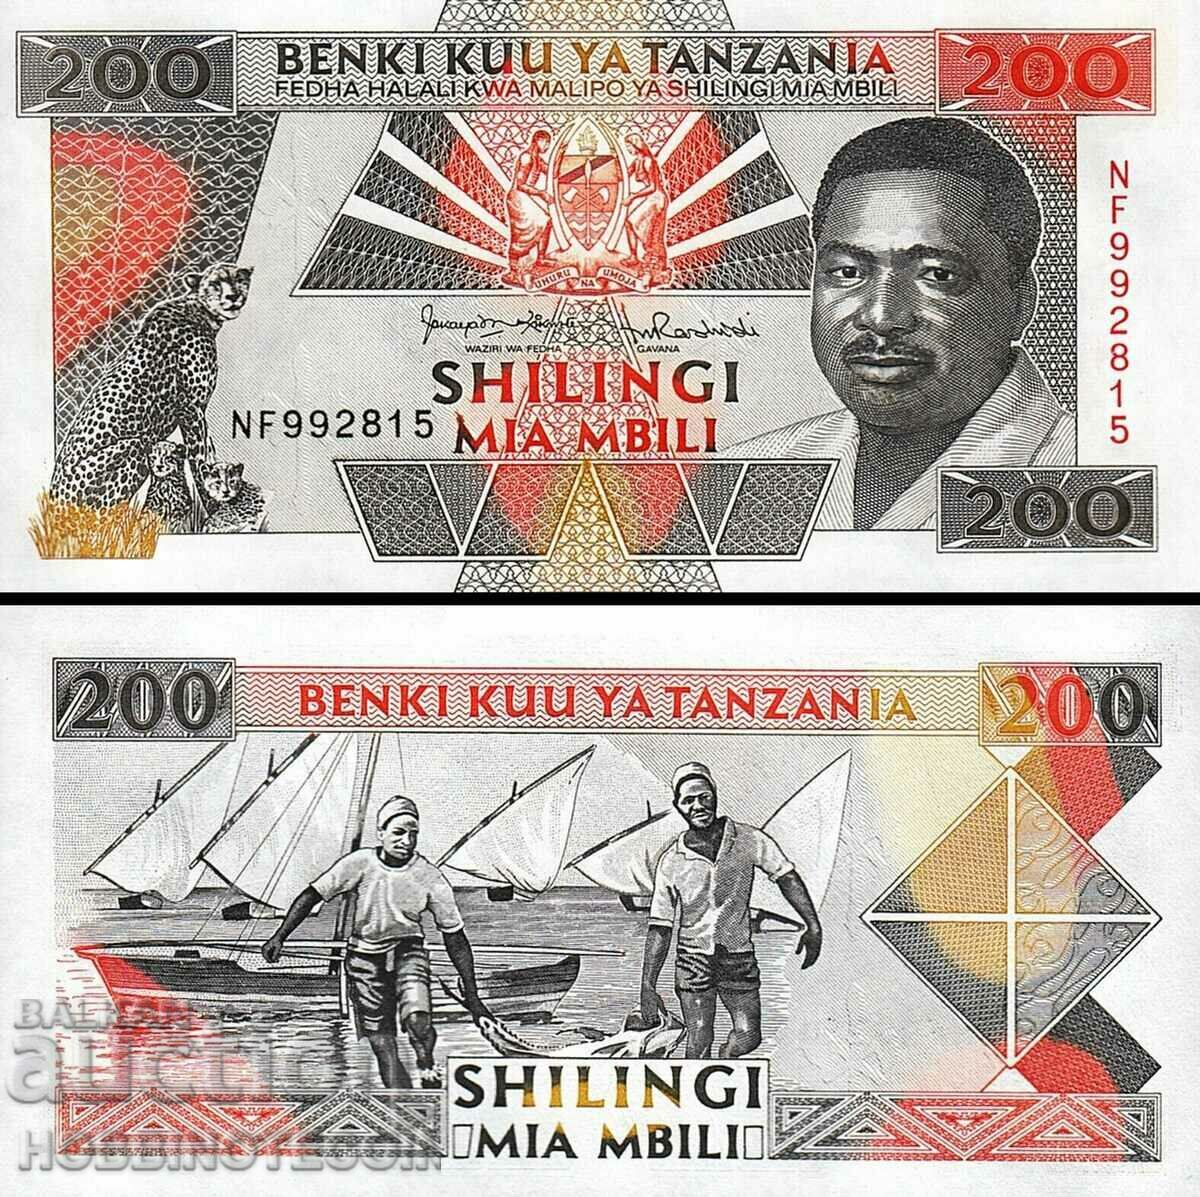 TANZANIA TANZANIA 200 Shilling issue - issue 1993 NEW UNC